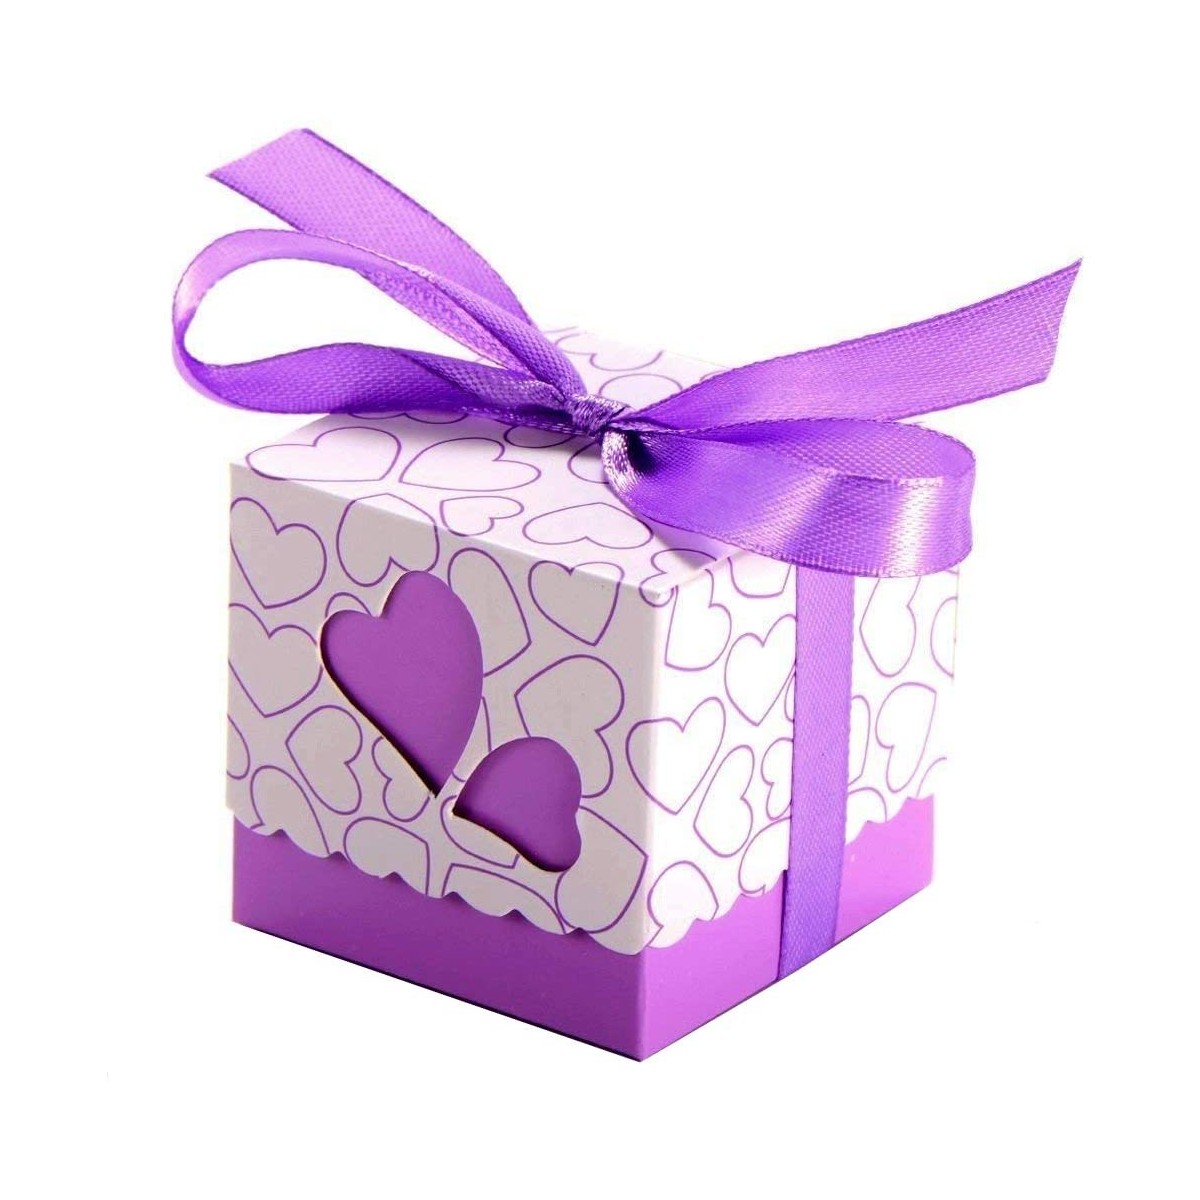 Set 50 scatole con cuore viola, per regali o bomboniere